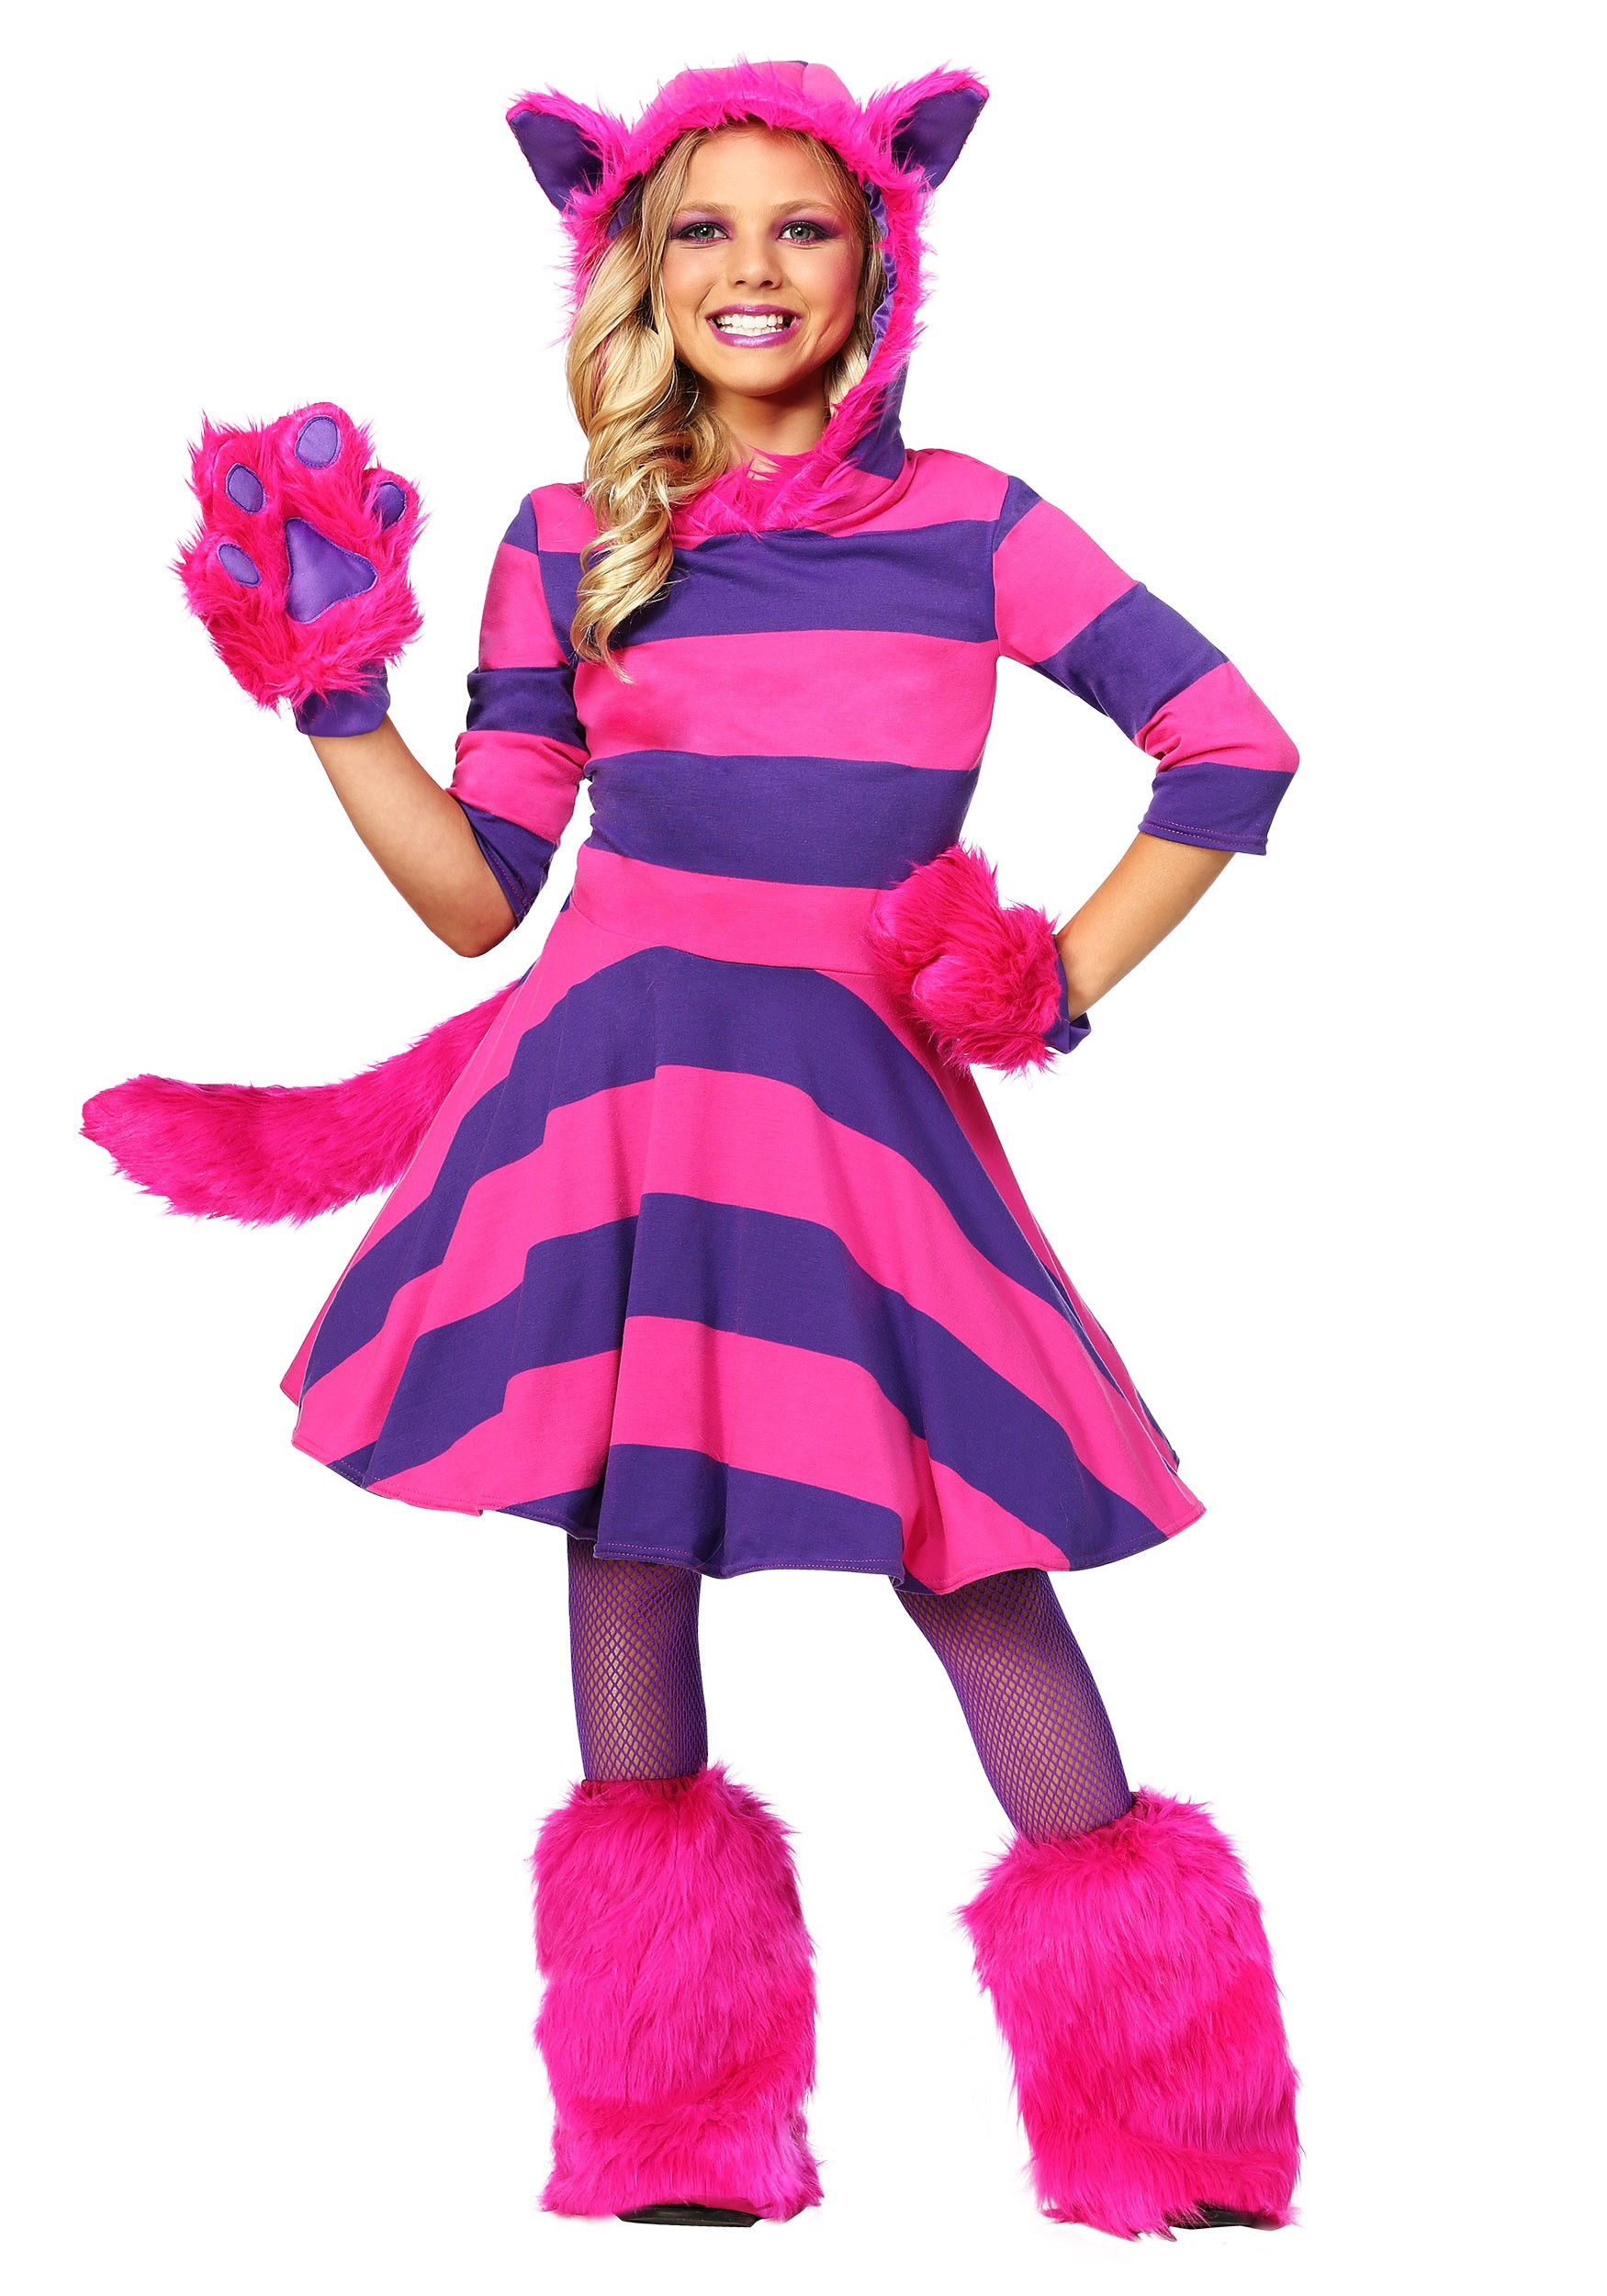 DIY Cheshire Cat Costume
 Cheshire Cat Costume for Girls